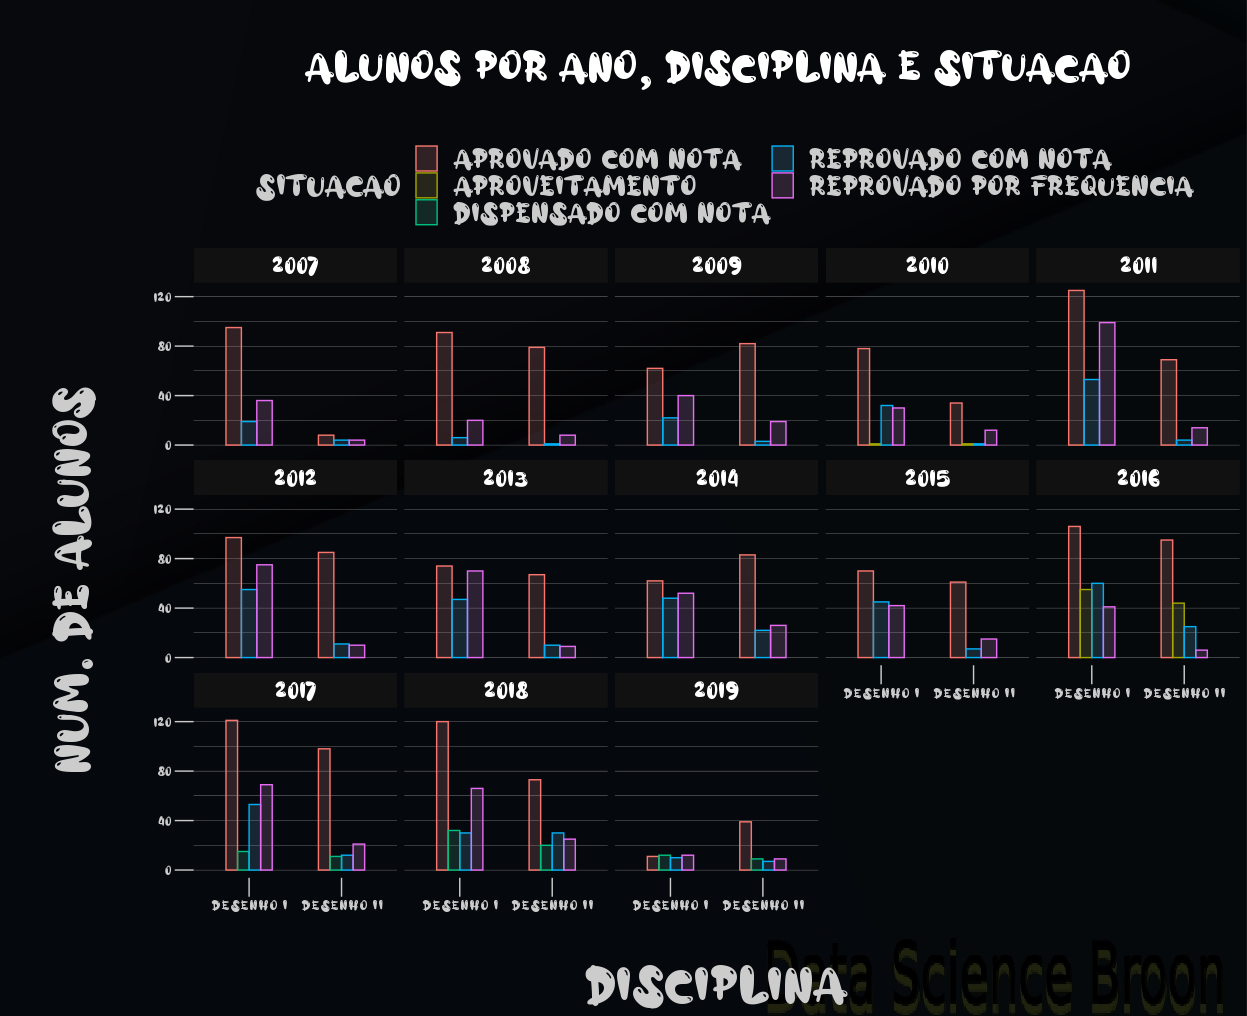 Gráficos de barras com número de estudantes por situação atual, disciplina e ano (n°).